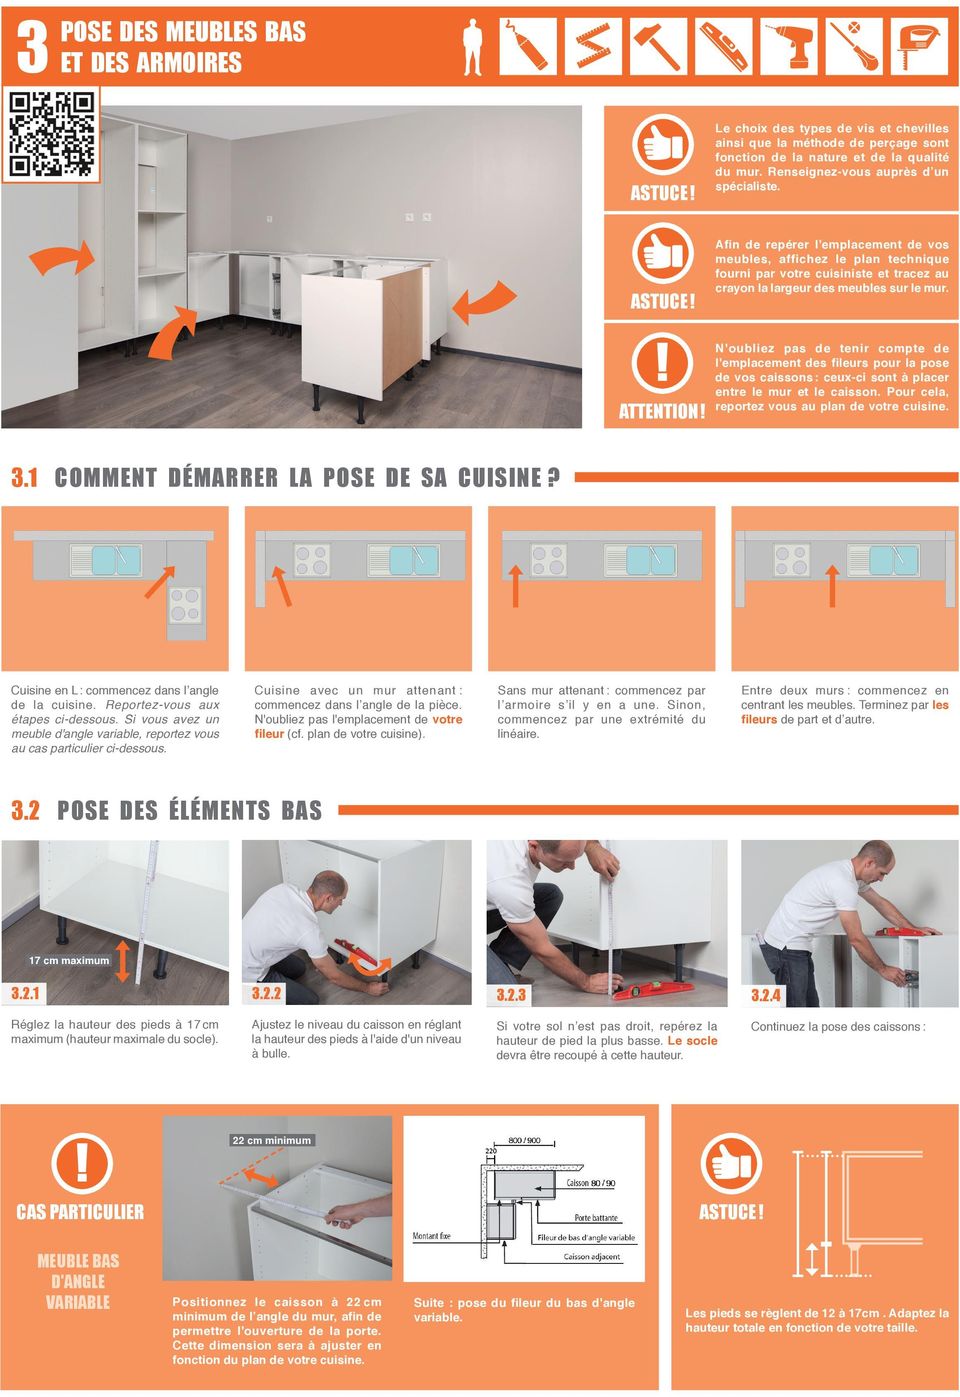 Afin de repérer l'emplacement de vos meubles, affichez le plan technique fourni par votre cuisiniste et tracez au crayon la largeur des meubles sur le mur. ATTENTION!